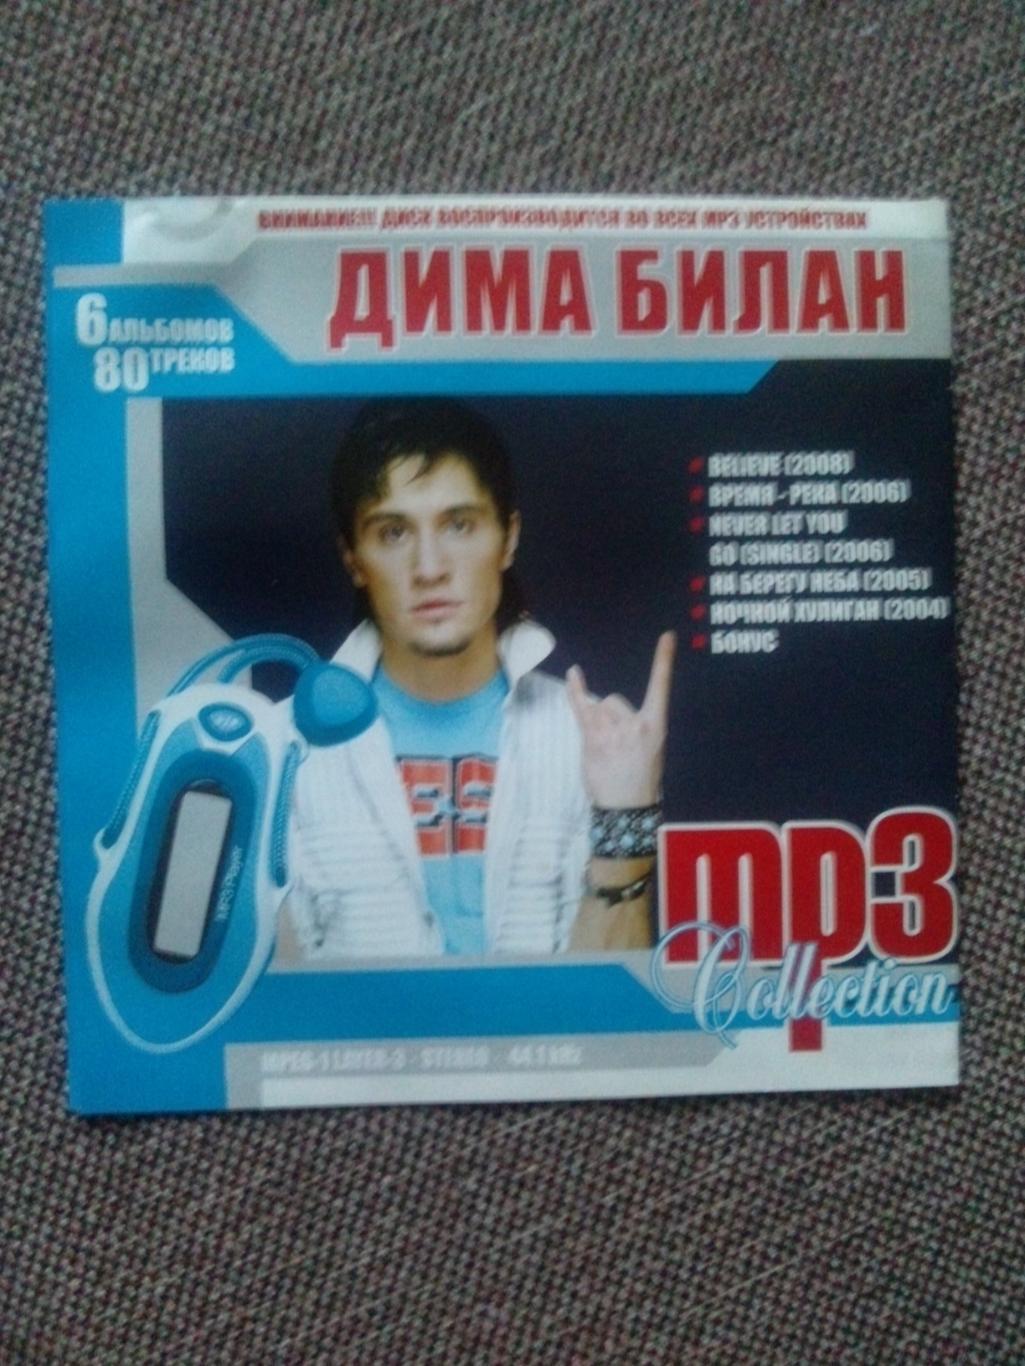 MP - 3 CD диск : Дима Билан 2004 - 2008 гг. (5 альбомов) Российская поп - музыка 1